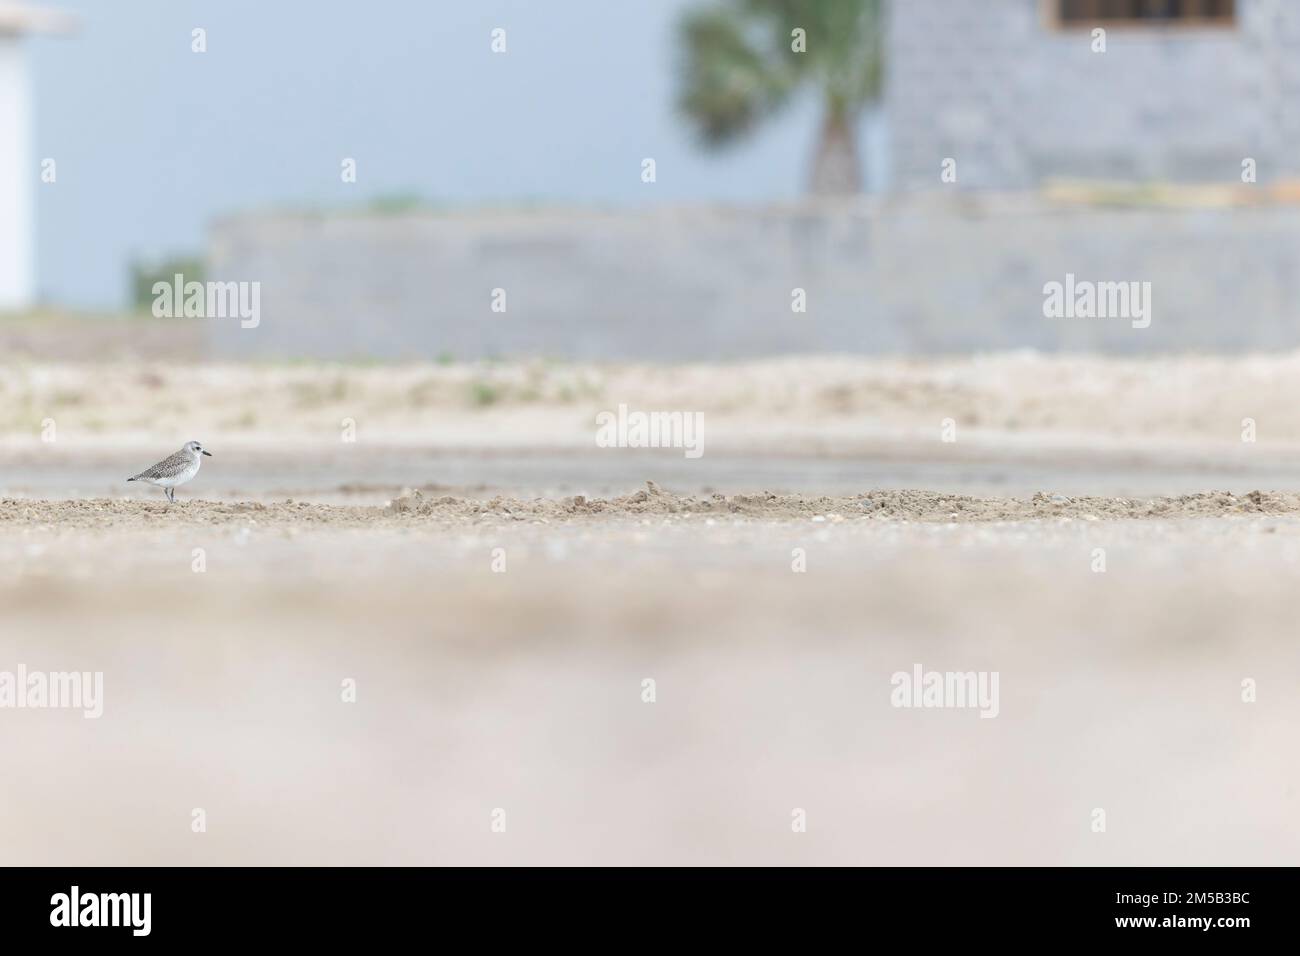 Un plovone dalle ventre nere (Scatarola di Pluvialis) che forgia durante la migrazione autunnale sulla spiaggia. Foto Stock